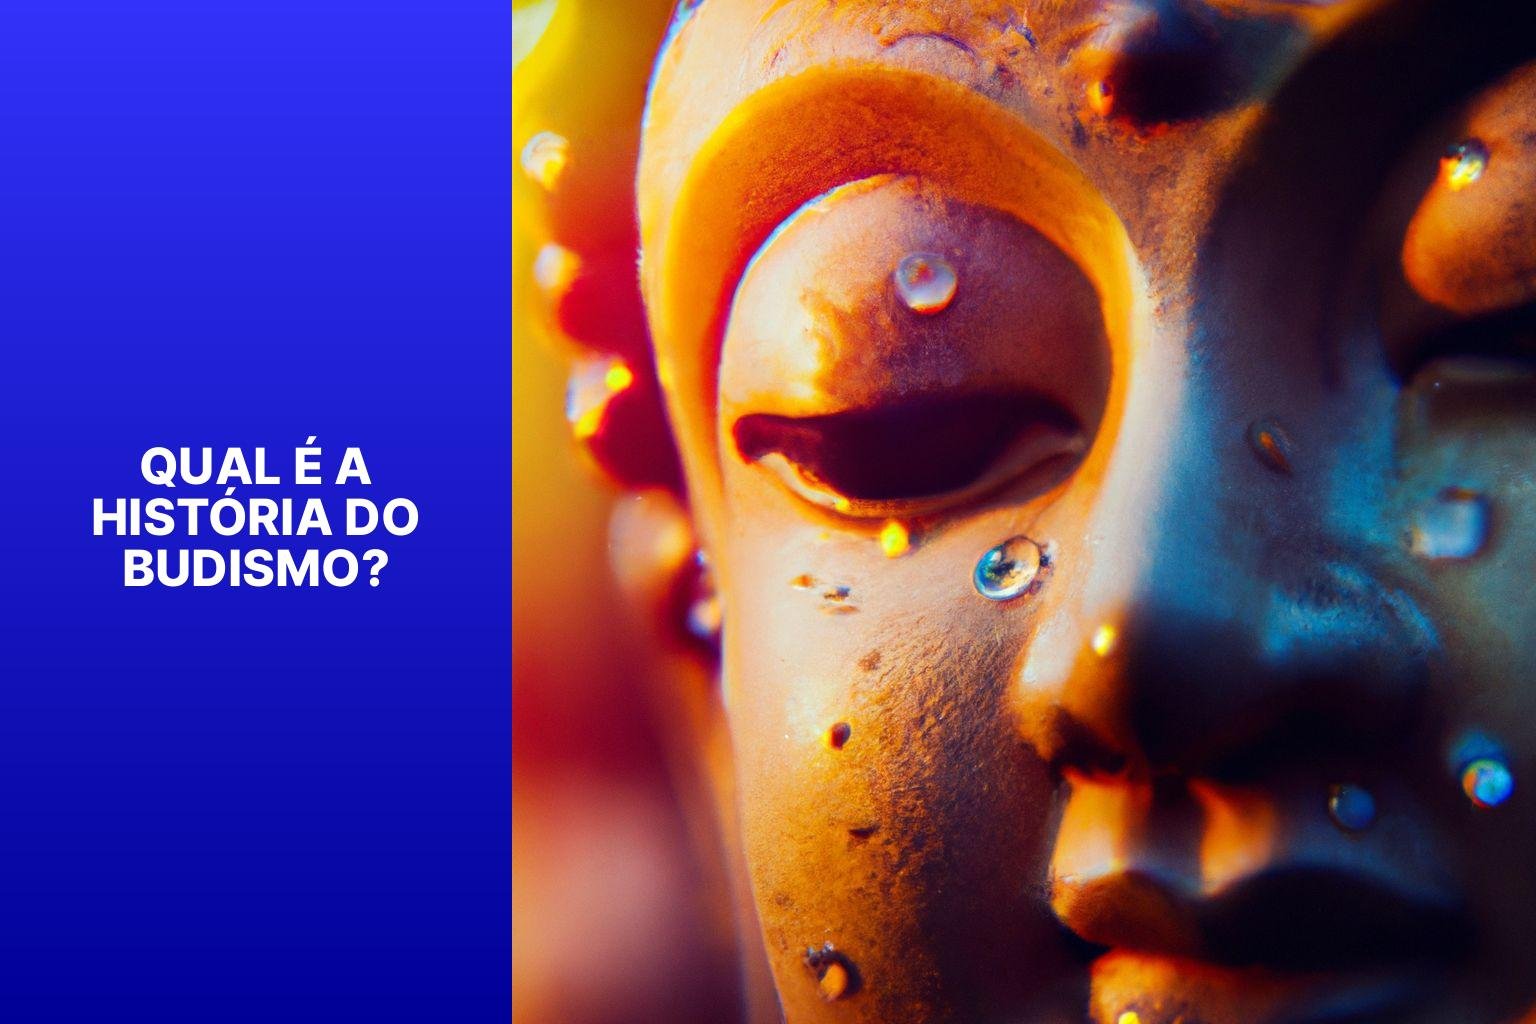 Qual é a história do Budismo? - Budismo Manaus 